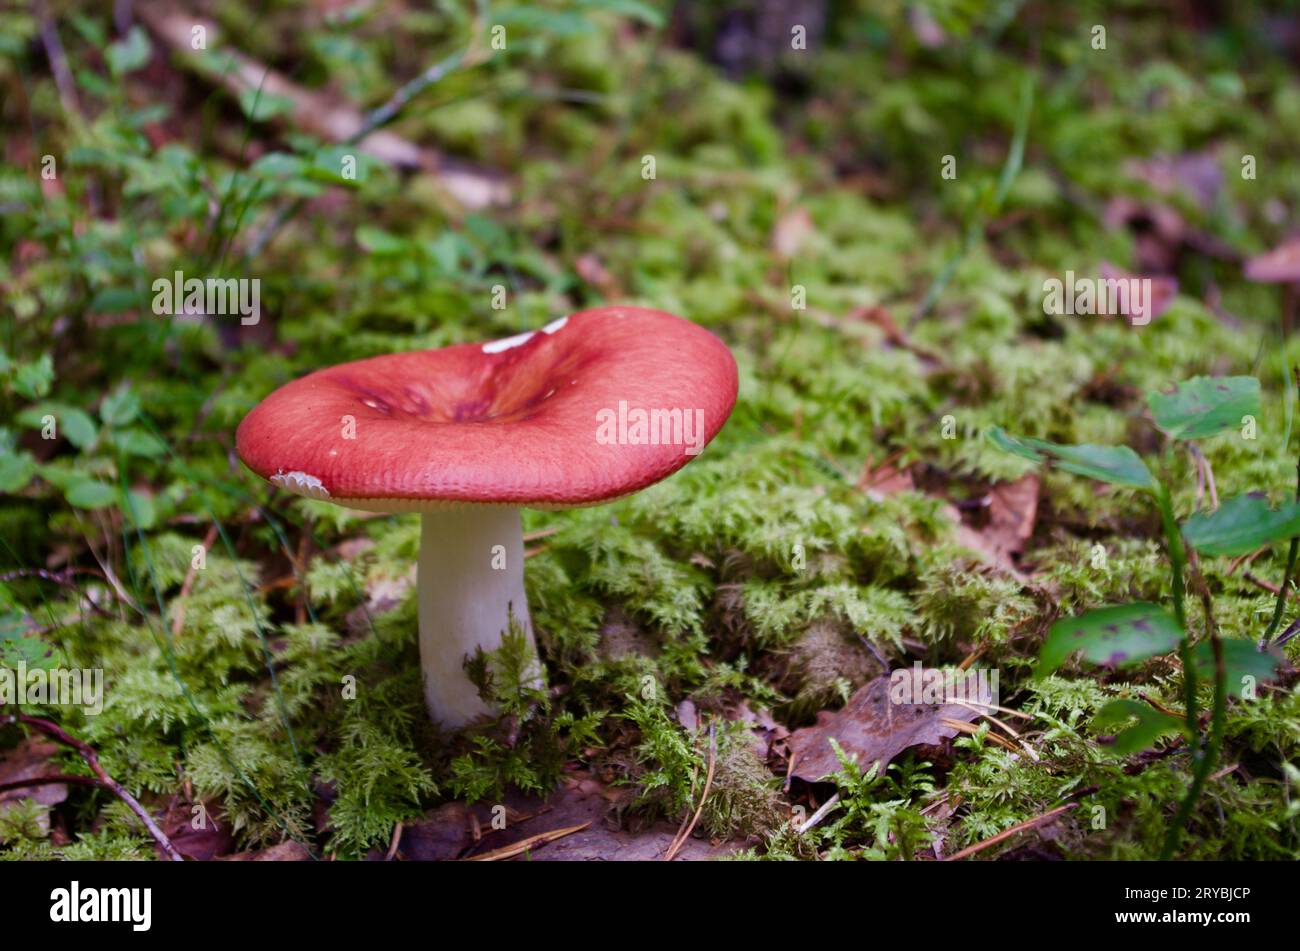 Russula-Pilz mit roter Kappe wächst im Herbst in grünem Moos mit Heidelbeerzweigen in einer Waldlandschaft. Stockfoto